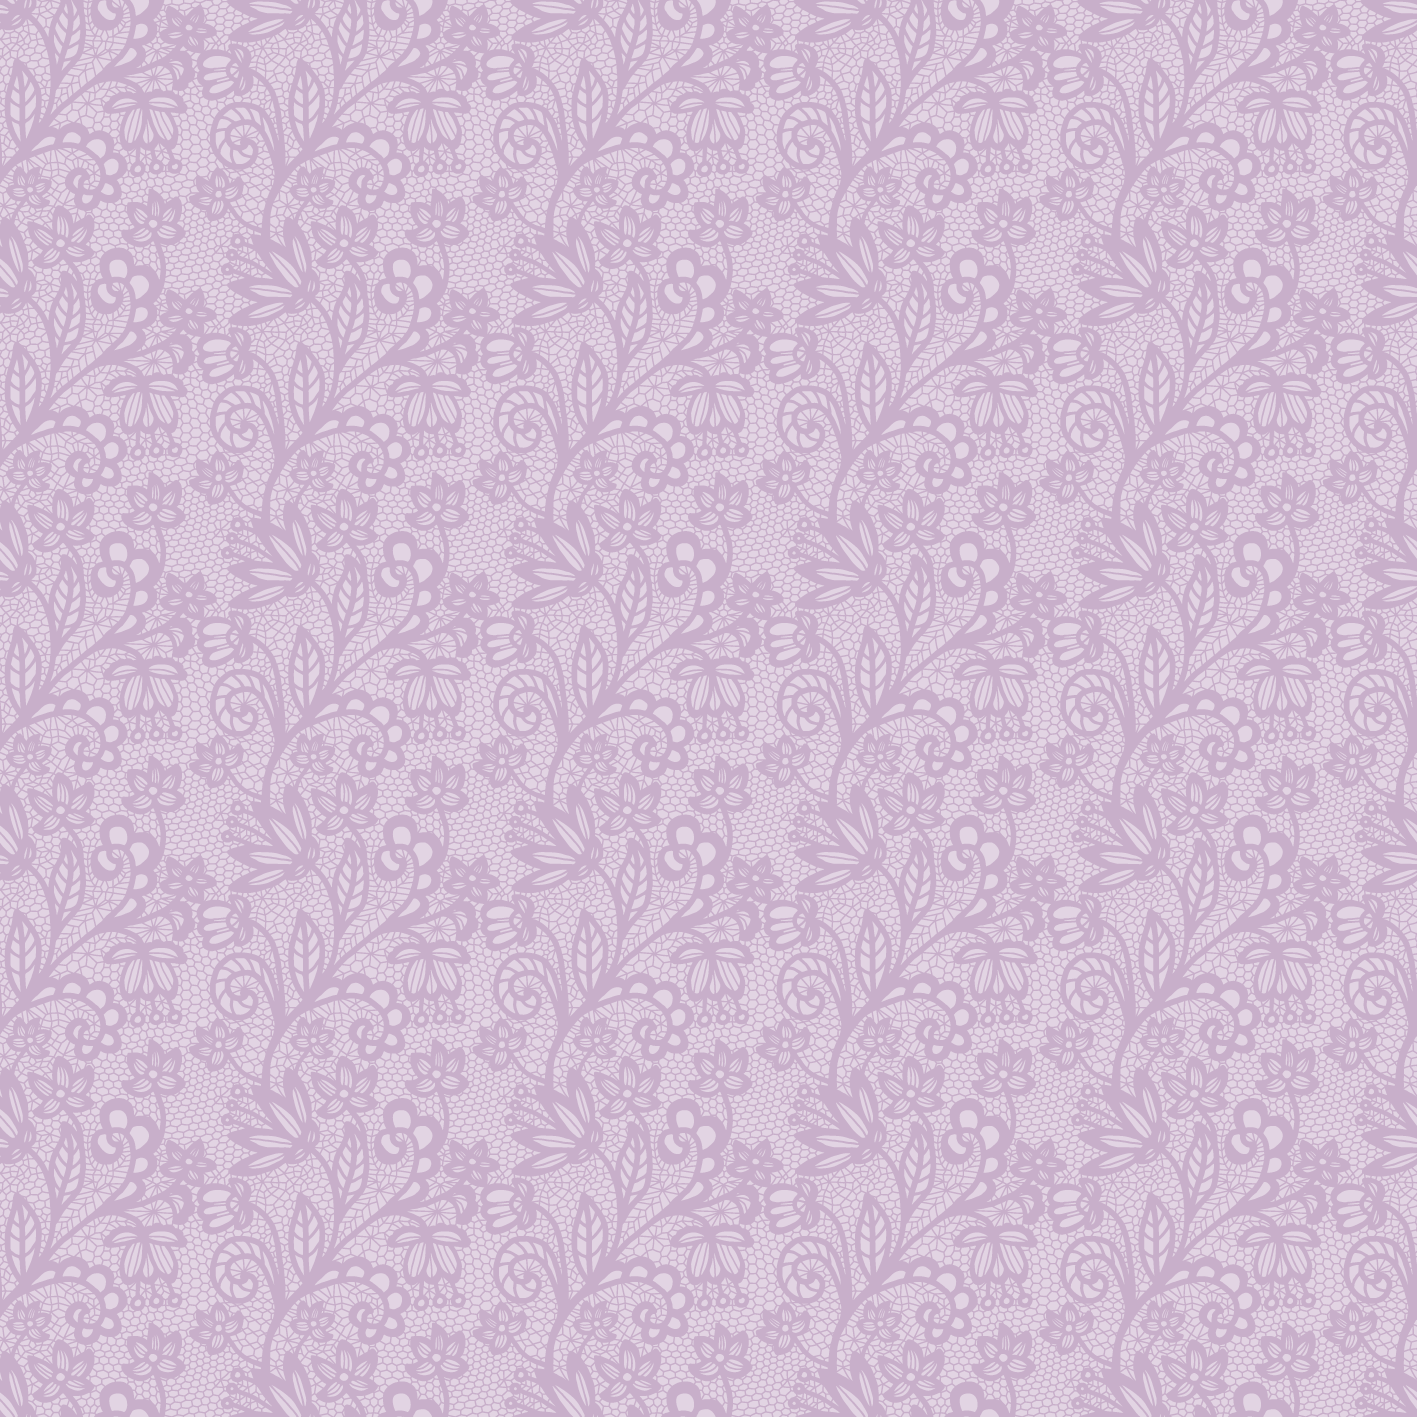 Reststück 0,70m Winterliebe Lace lila *Sommersweat*